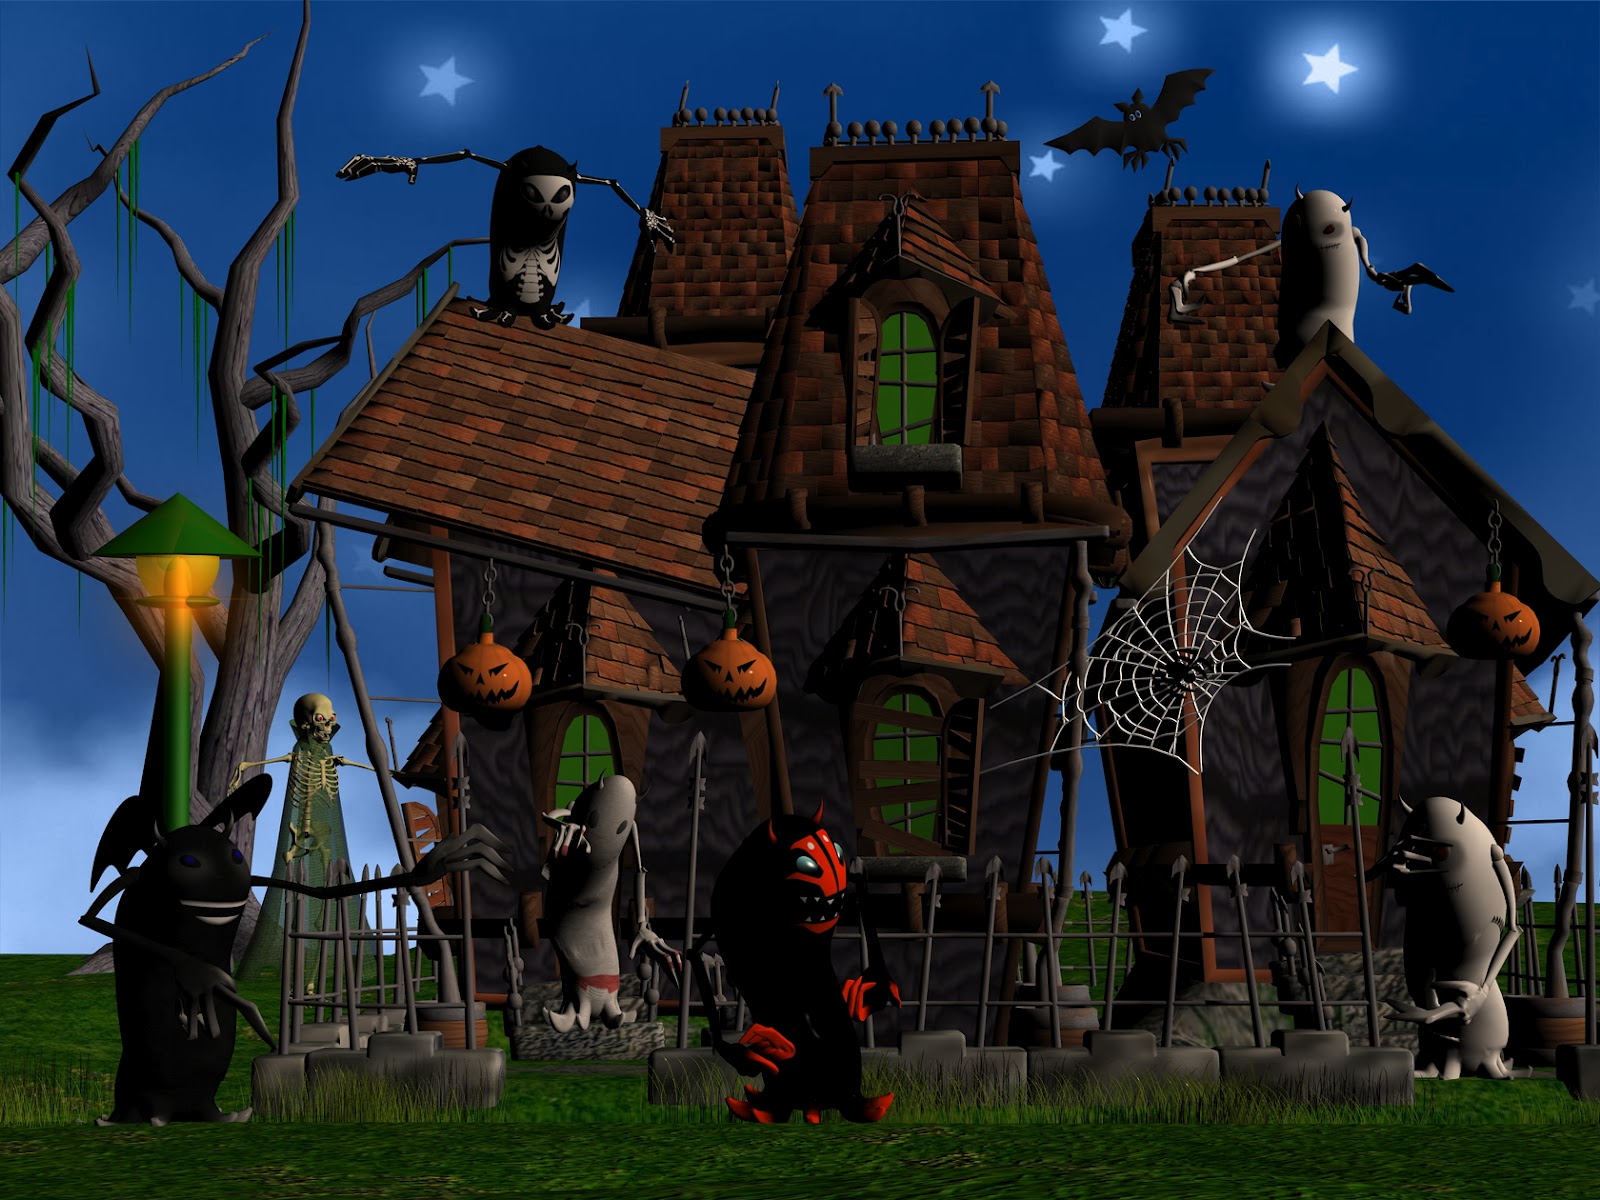 http://2.bp.blogspot.com/-WAgWajyzECg/UFDdmHZ90vI/AAAAAAAACGA/F-gcJtB1NCw/s1600/3d-monsters-halloween-house.jpg